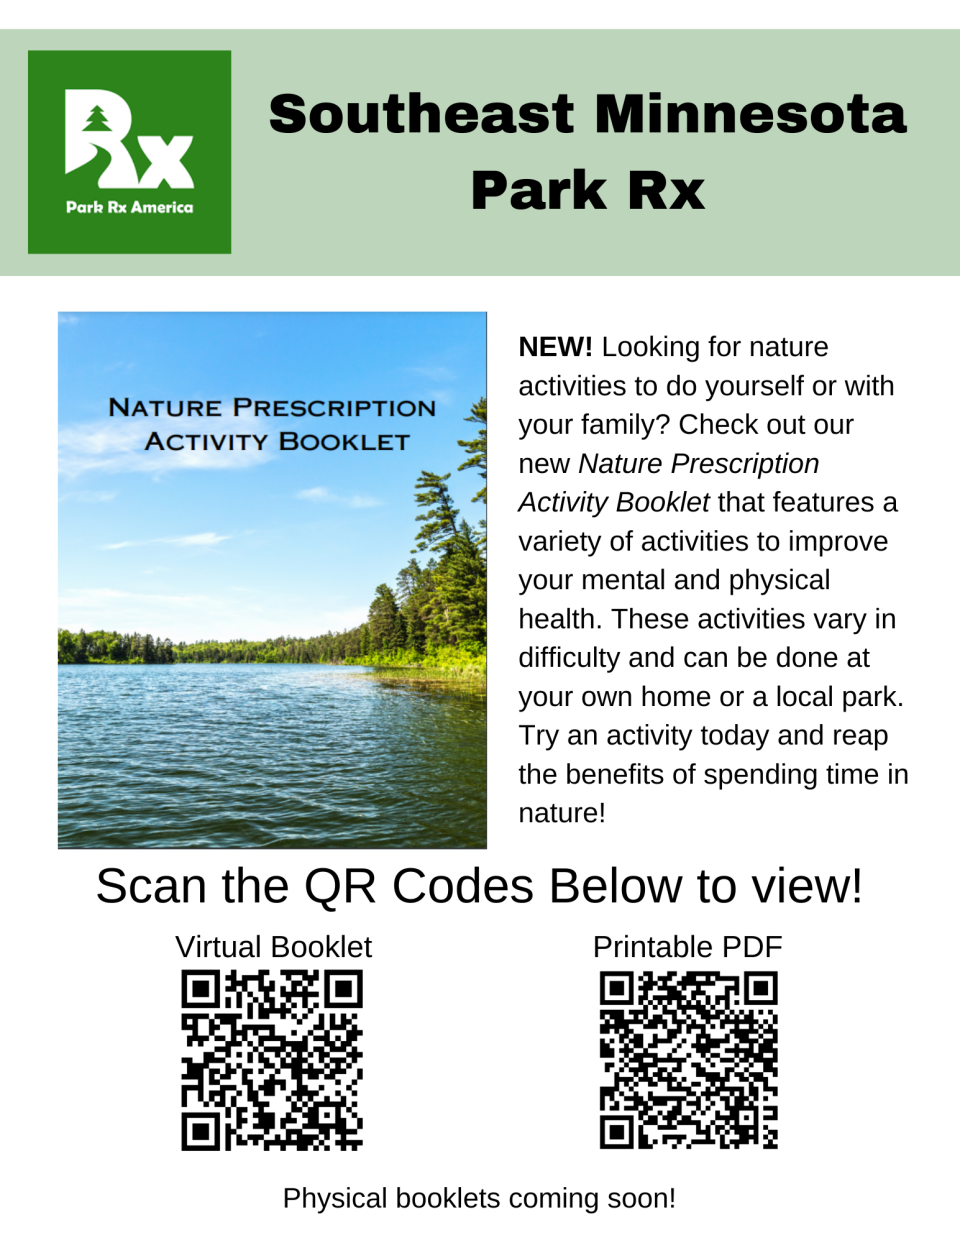 Nature Prescription Activity Booklet Flyer